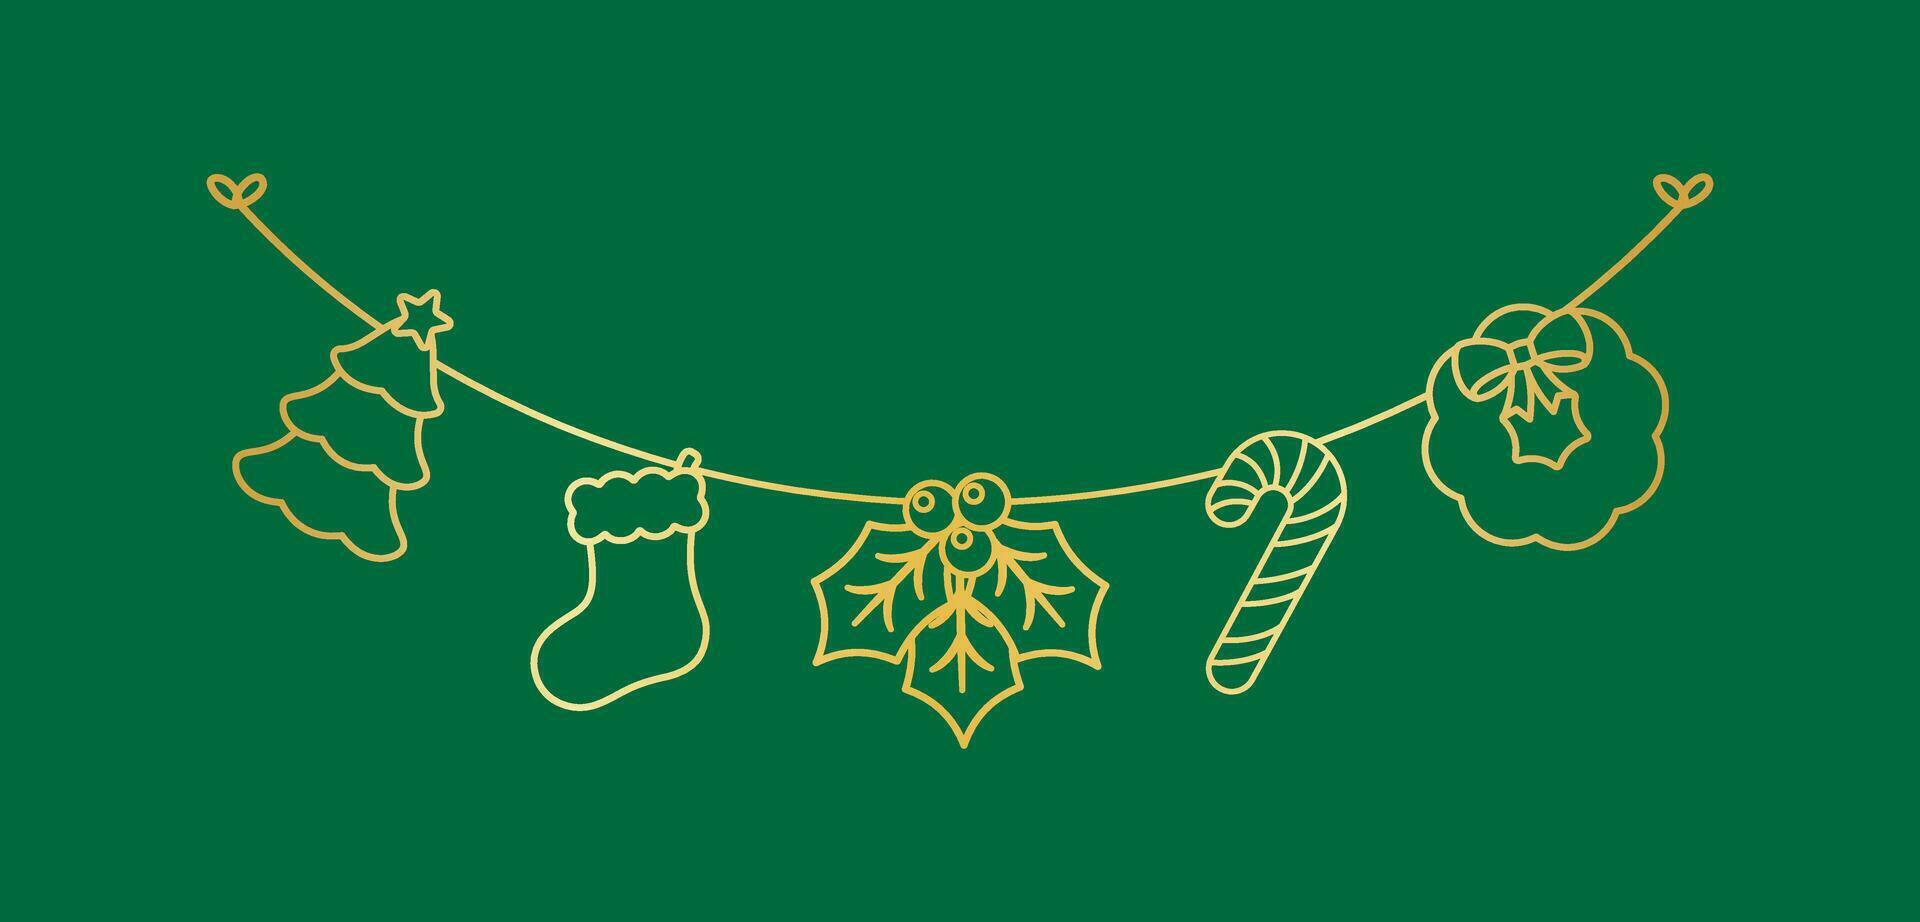 Gold Weihnachten Girlande Gliederung Gekritzel Vektor Illustration, Weihnachten Grafik zum Kinder, festlich Winter Urlaub Jahreszeit Ammer